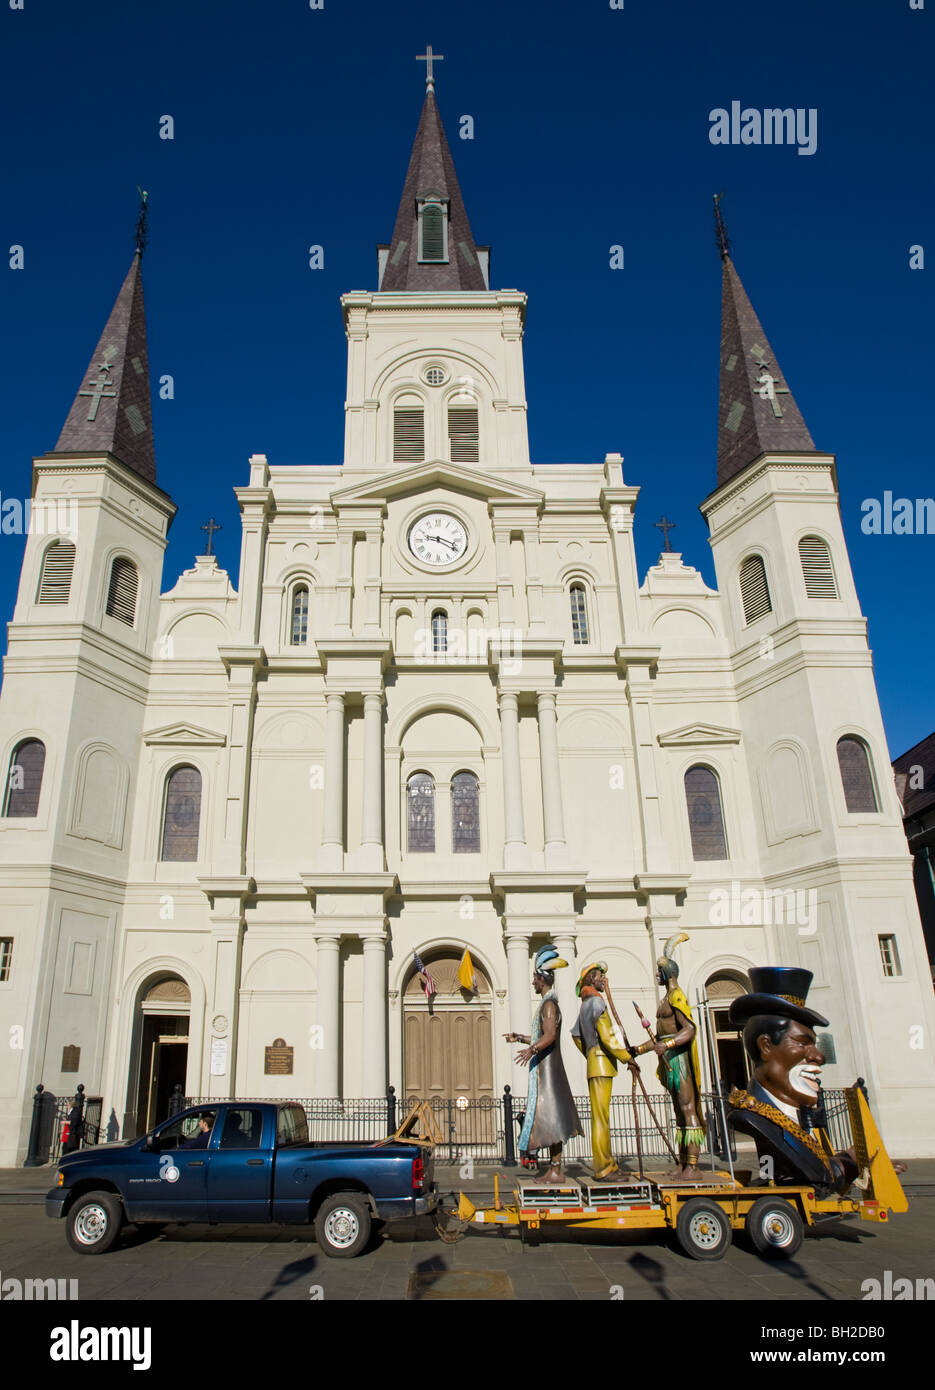 Flotteurs zoulou à destination de Mardi Gras en passant par la Cathédrale St Louis, Jackson Square, La Nouvelle-Orléans, Louisiane Banque D'Images